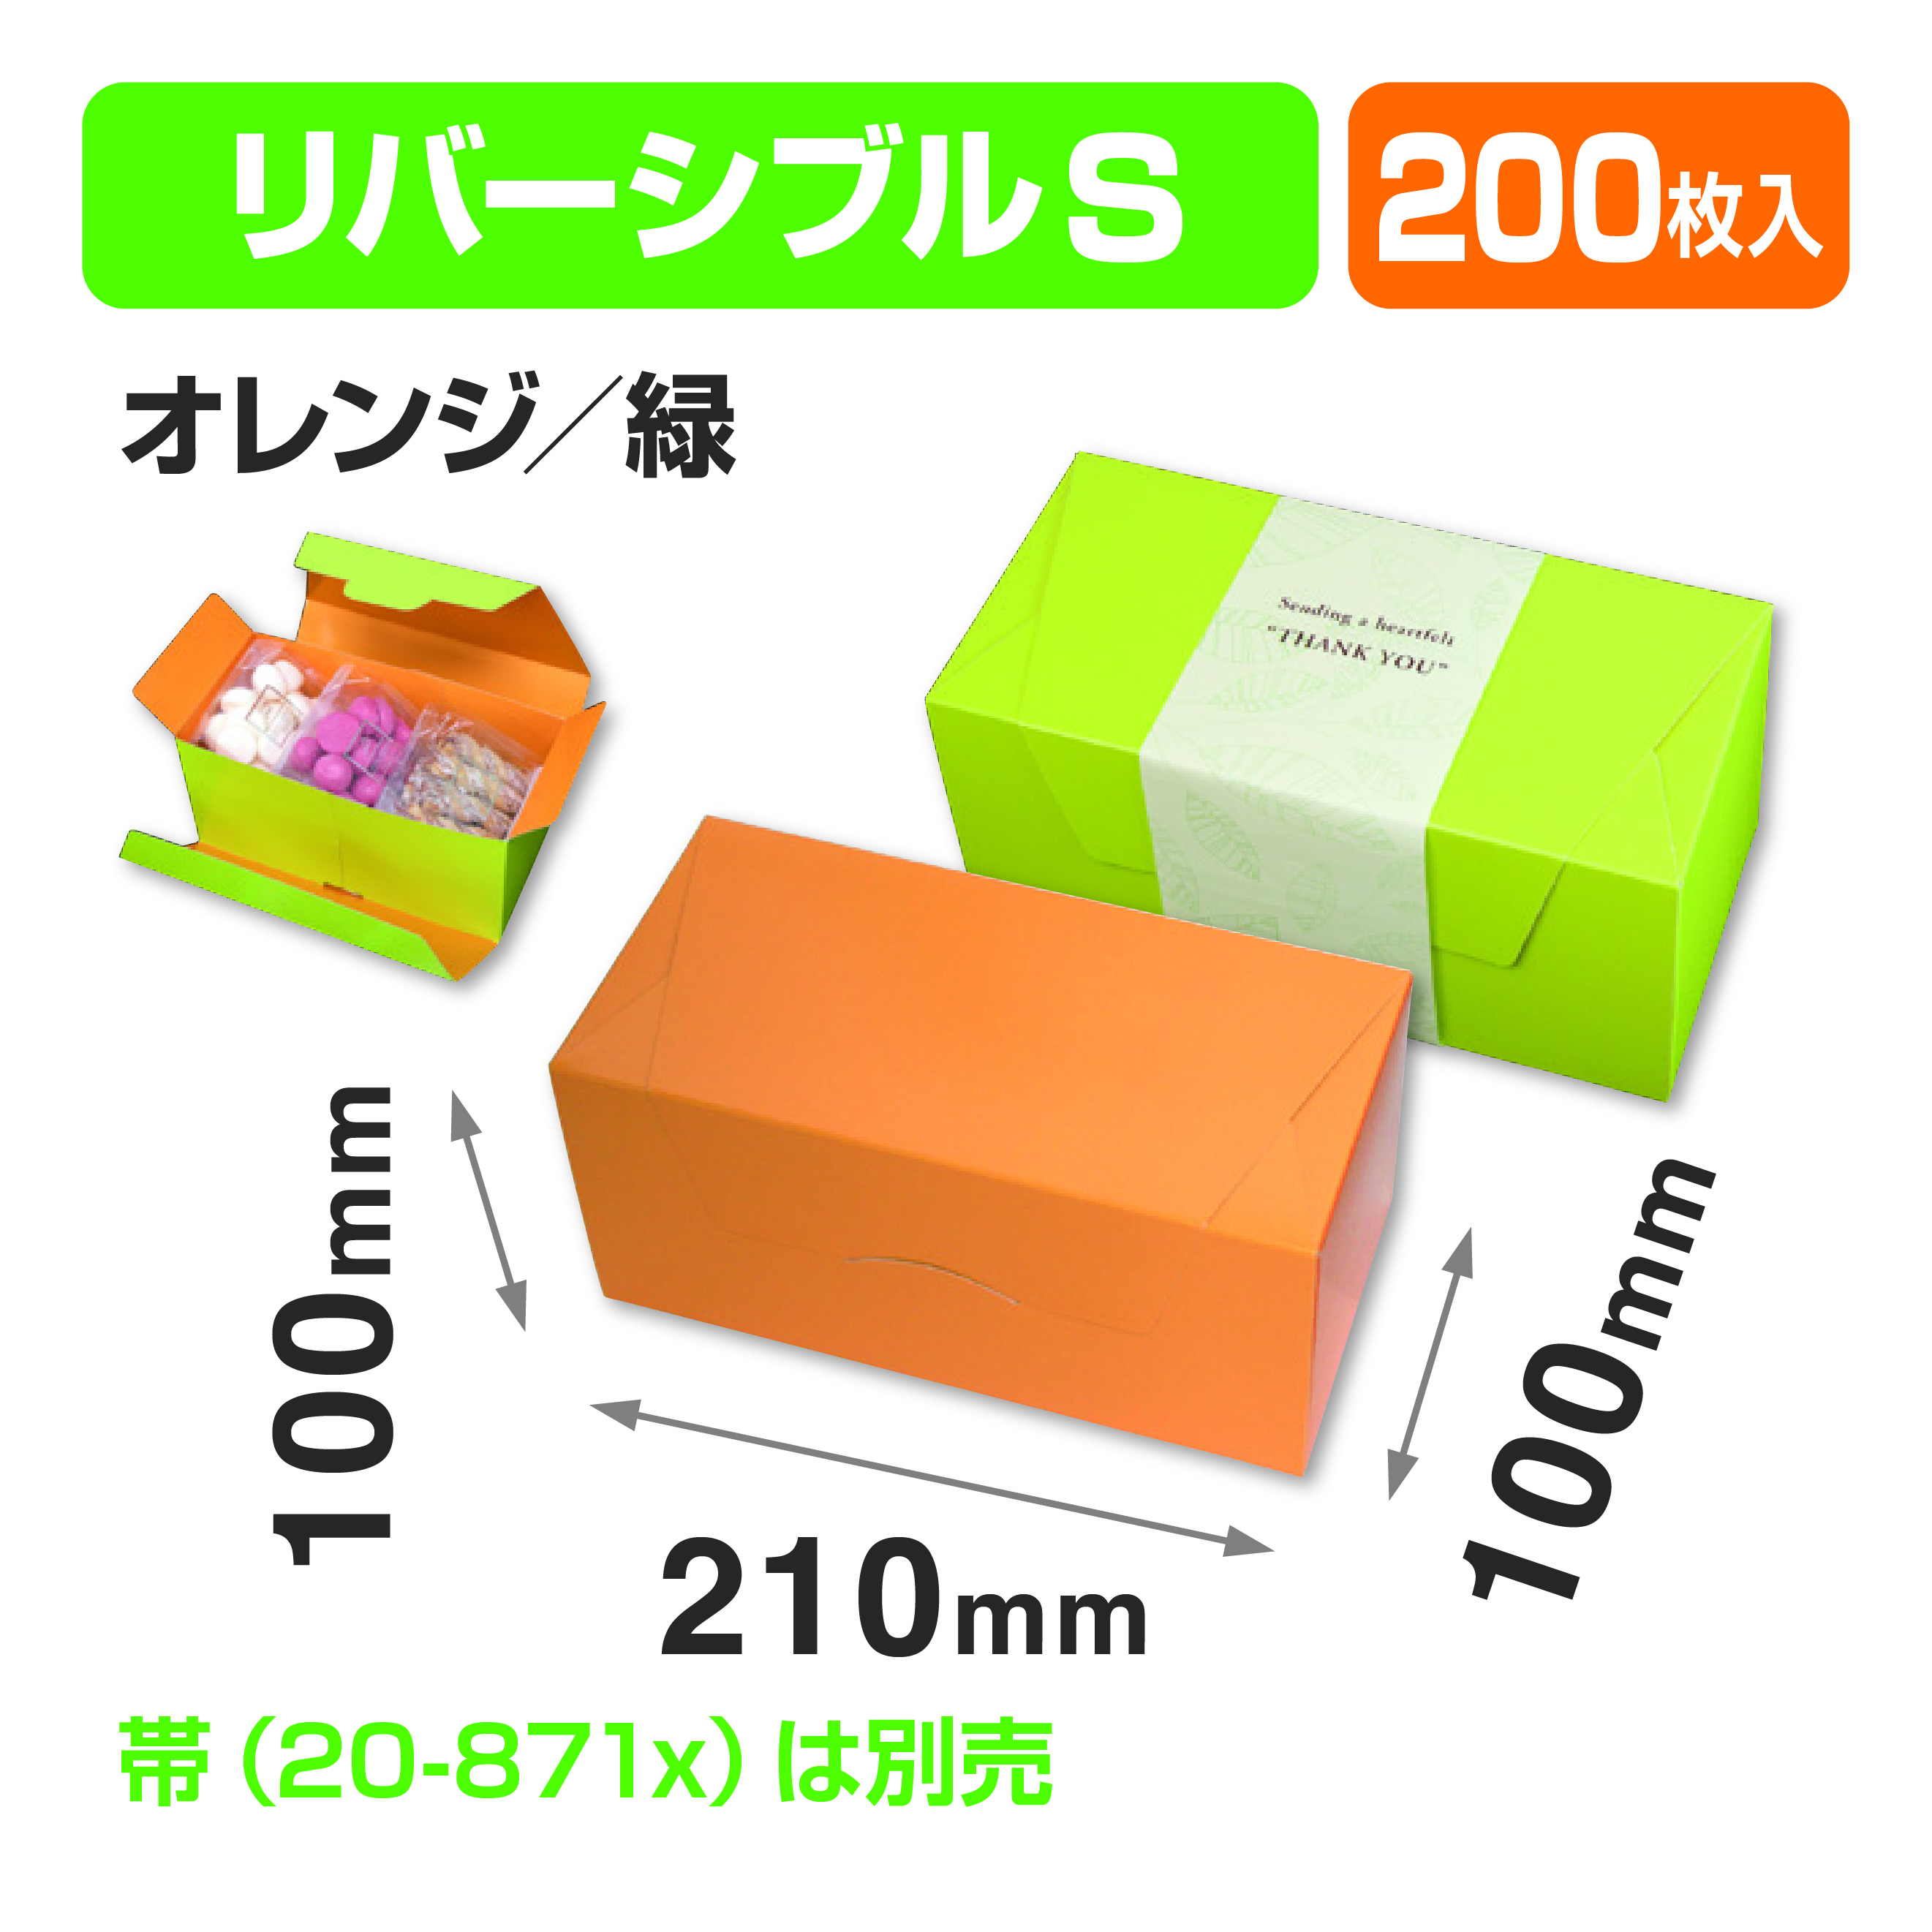 パケットクルールS オレンジ/緑商品画像1